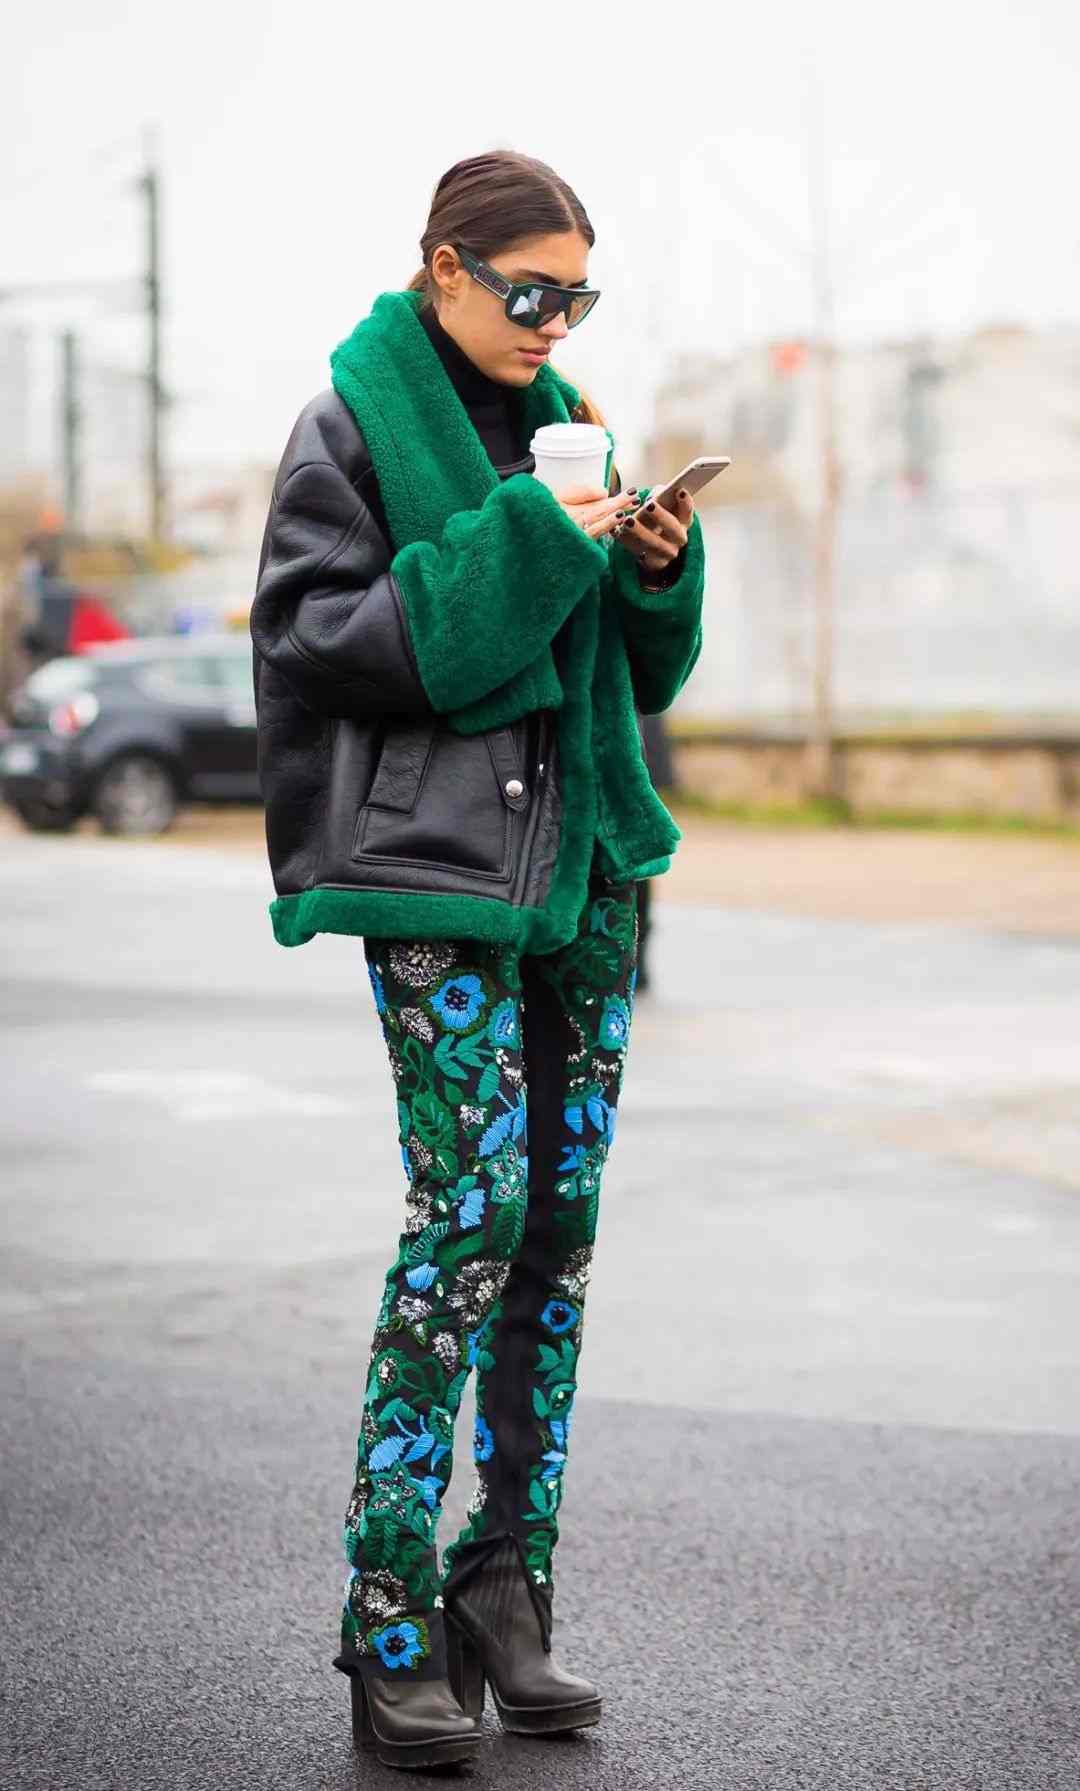 Byxor med blommönster kombinerar vinterläderjacka läderstövlar modetrender kvinnor